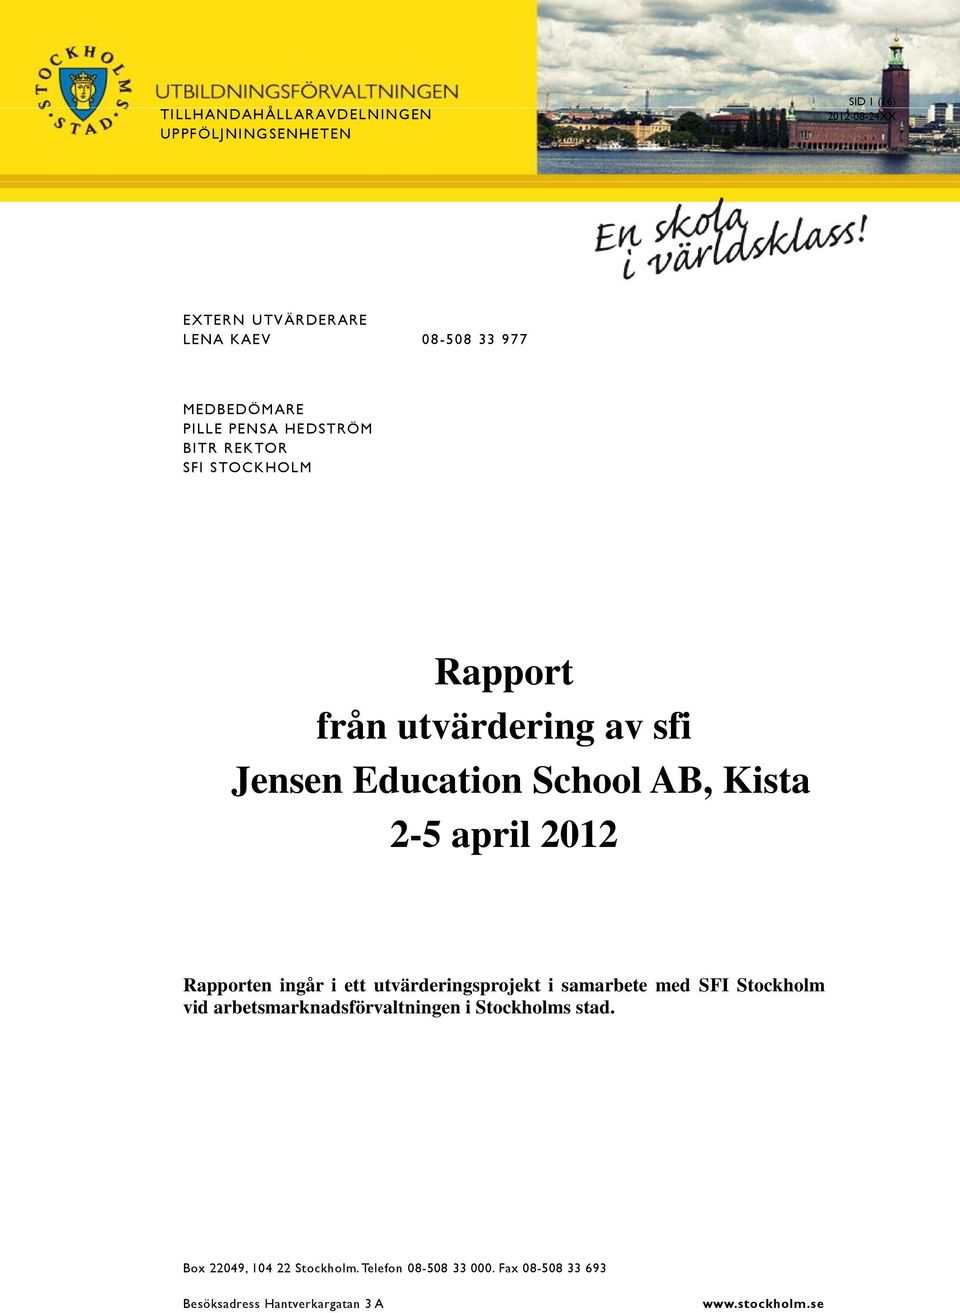 Kista 2-5 april 2012 Rapporten ingår i ett utvärderingsprojekt i samarbete med SFI Stockholm vid arbetsmarknadsförvaltningen